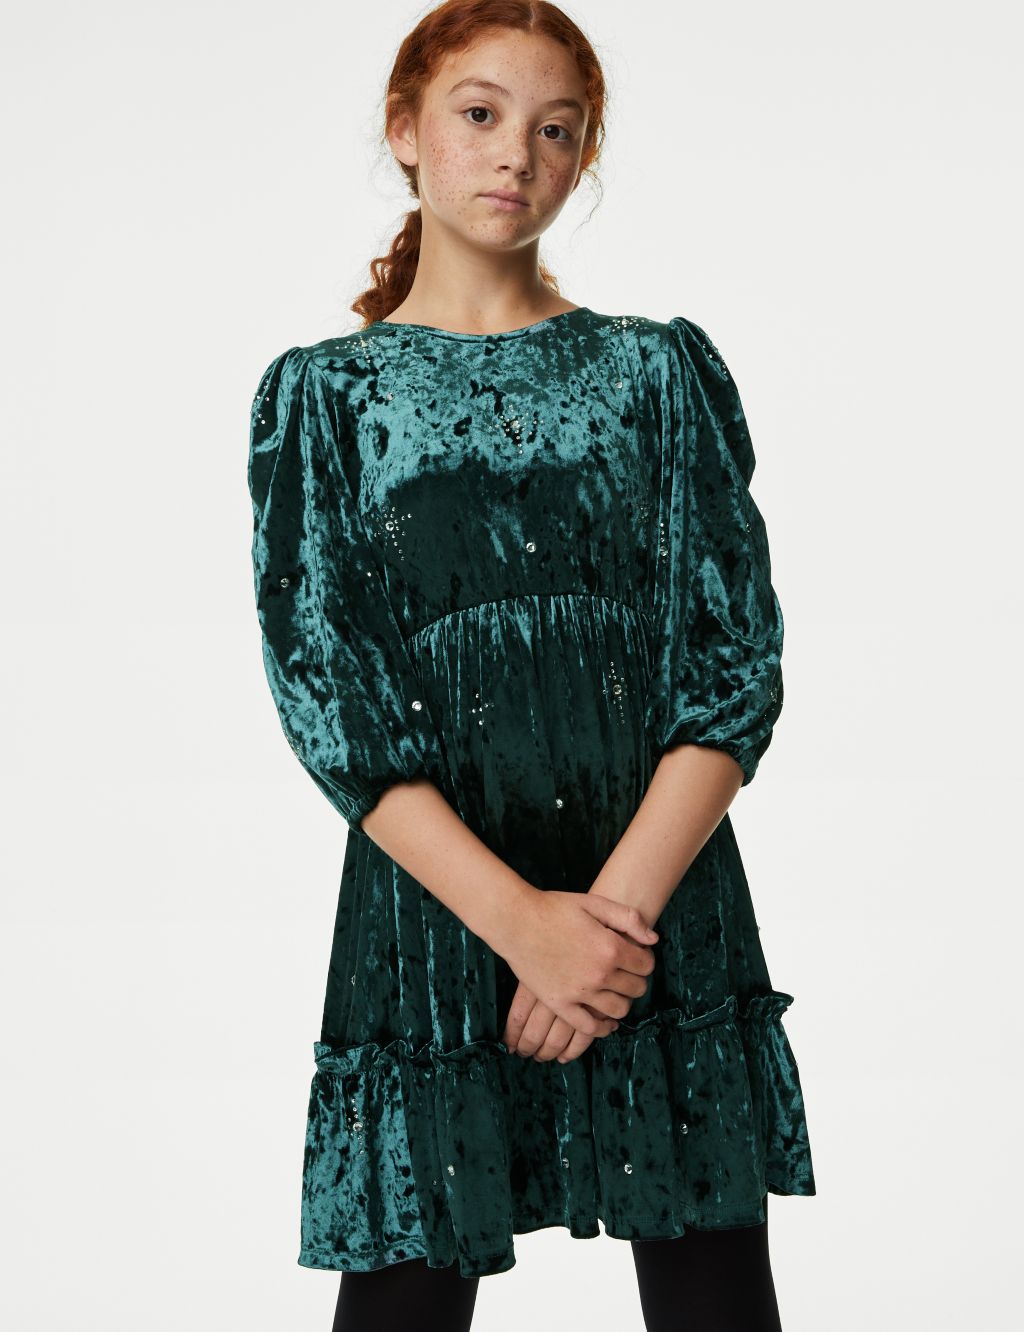 Crushed Velvet Rhinestone Dress (6-16 Yrs) image 1